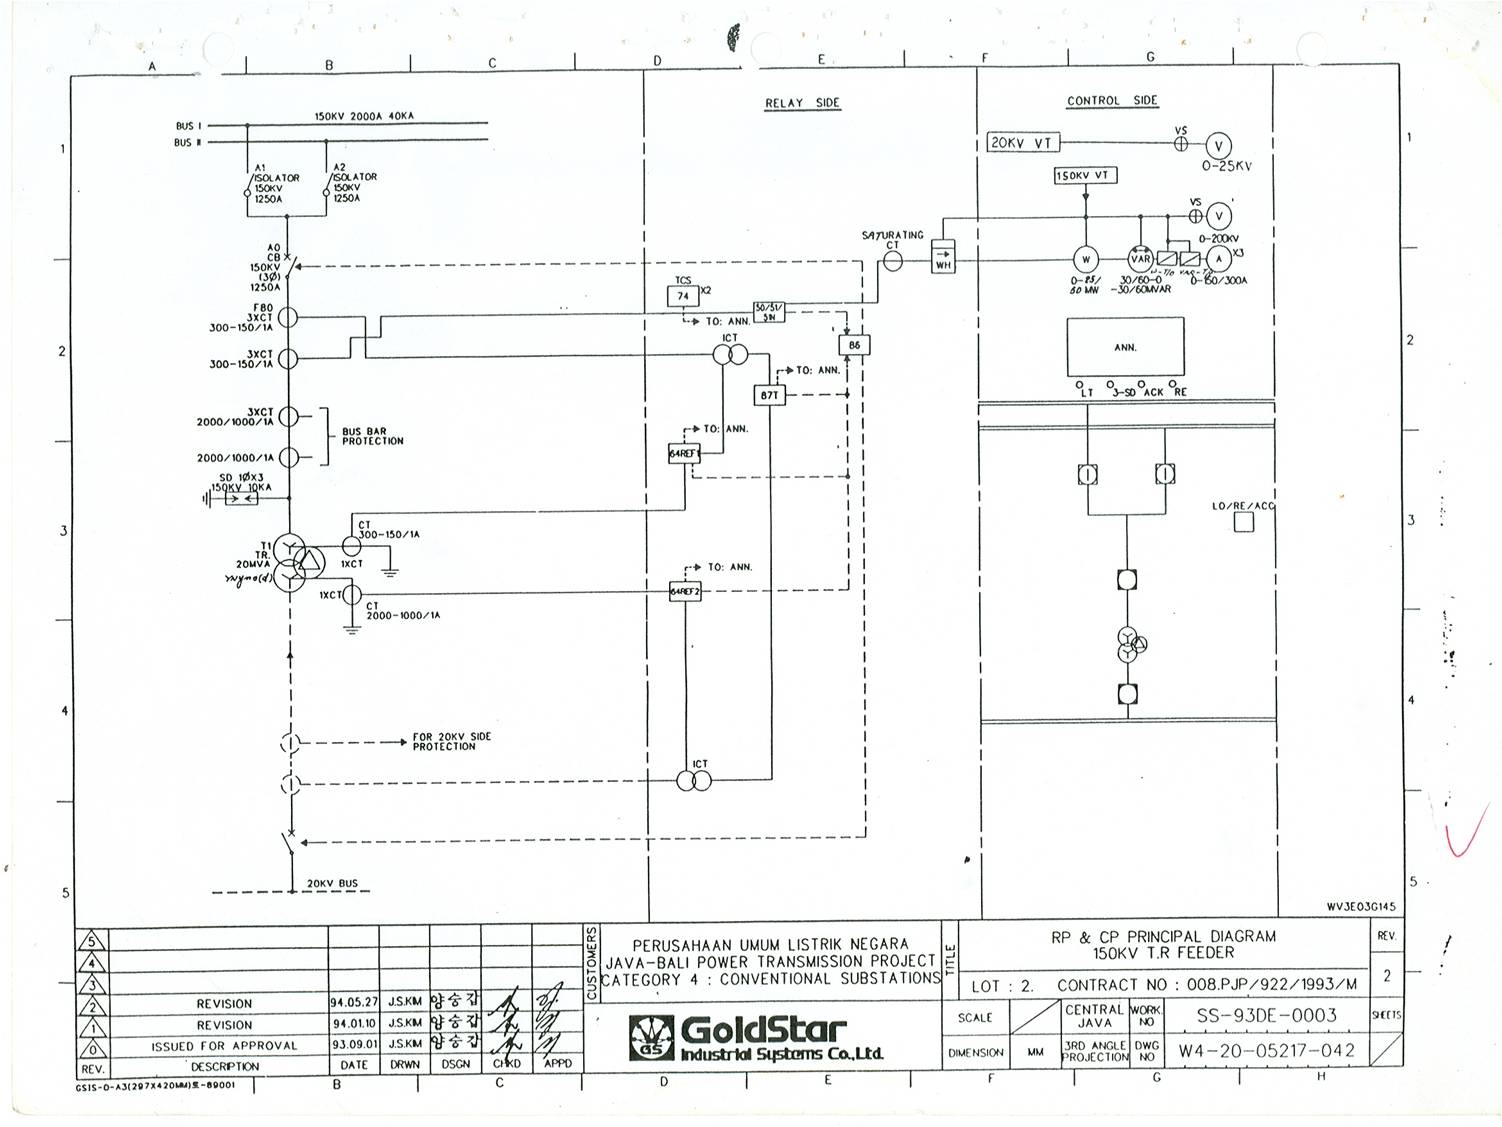 Switchyard: RP dan CP Principal Diagram 150 KV TR Feeder